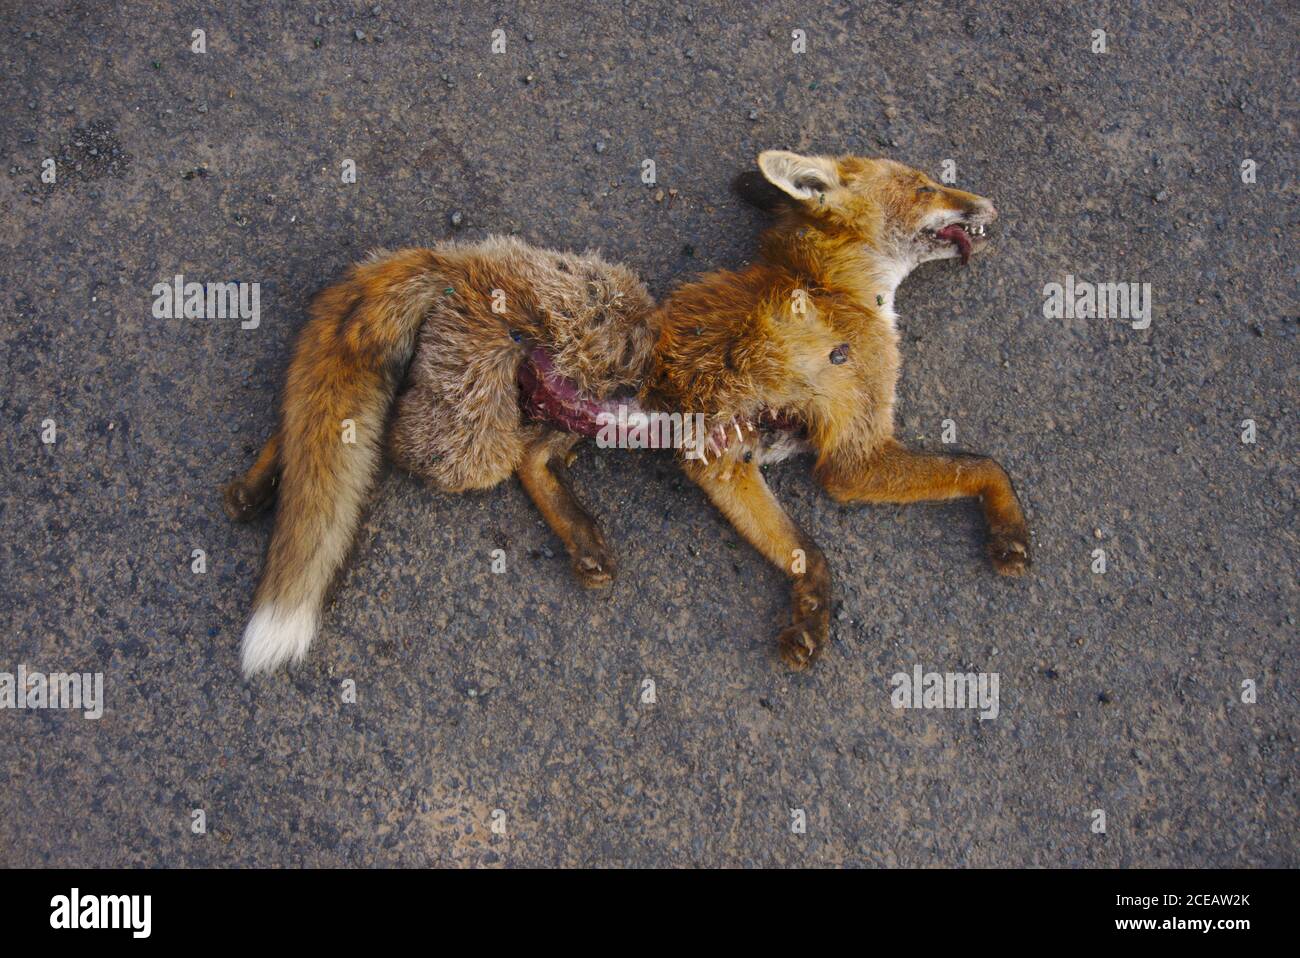 Jeunes renards morts (vulpes vulpes) se trouvant sur la route de campagne avec des insectes se nourrissant de plaies ouvertes. Banque D'Images